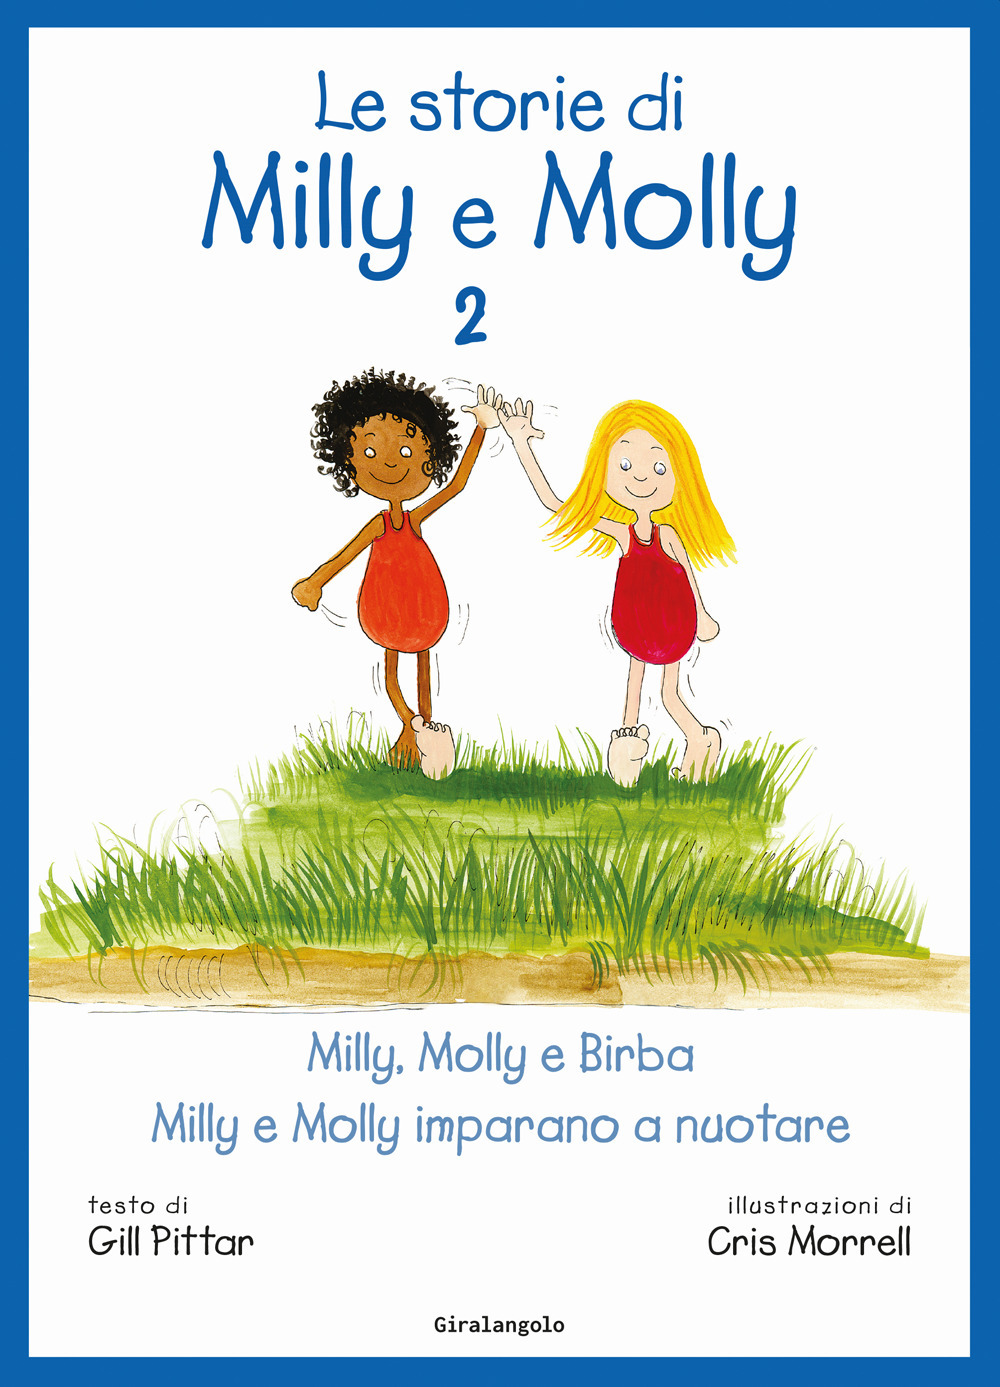 Le storie di Milly Molly. Ediz. a colori. Vol. 2